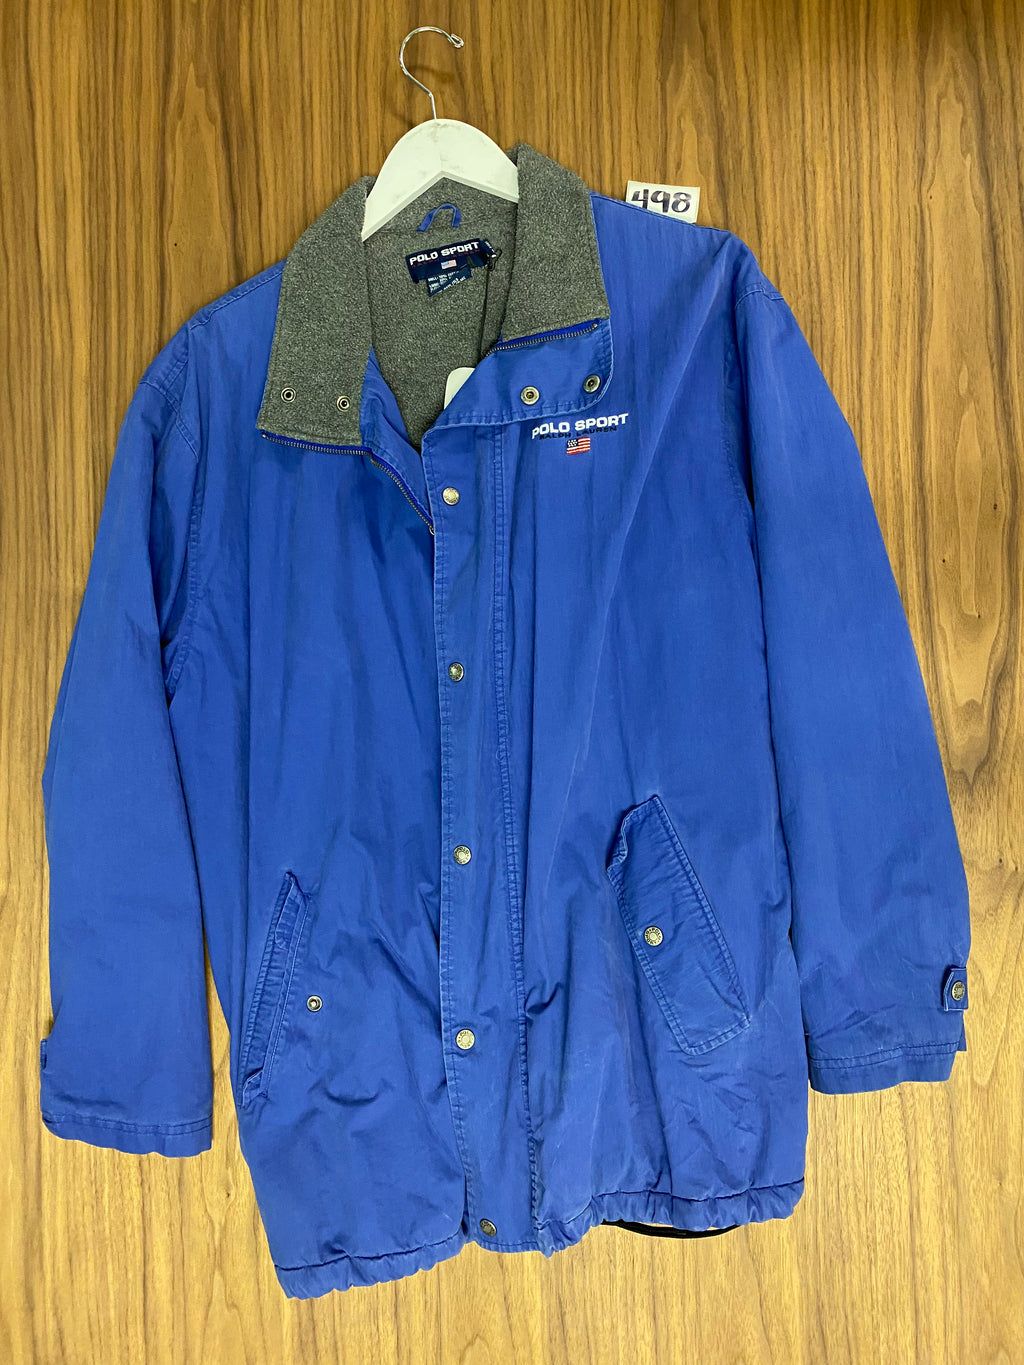 Polo Sport Fleece Lined Jacket - Blue